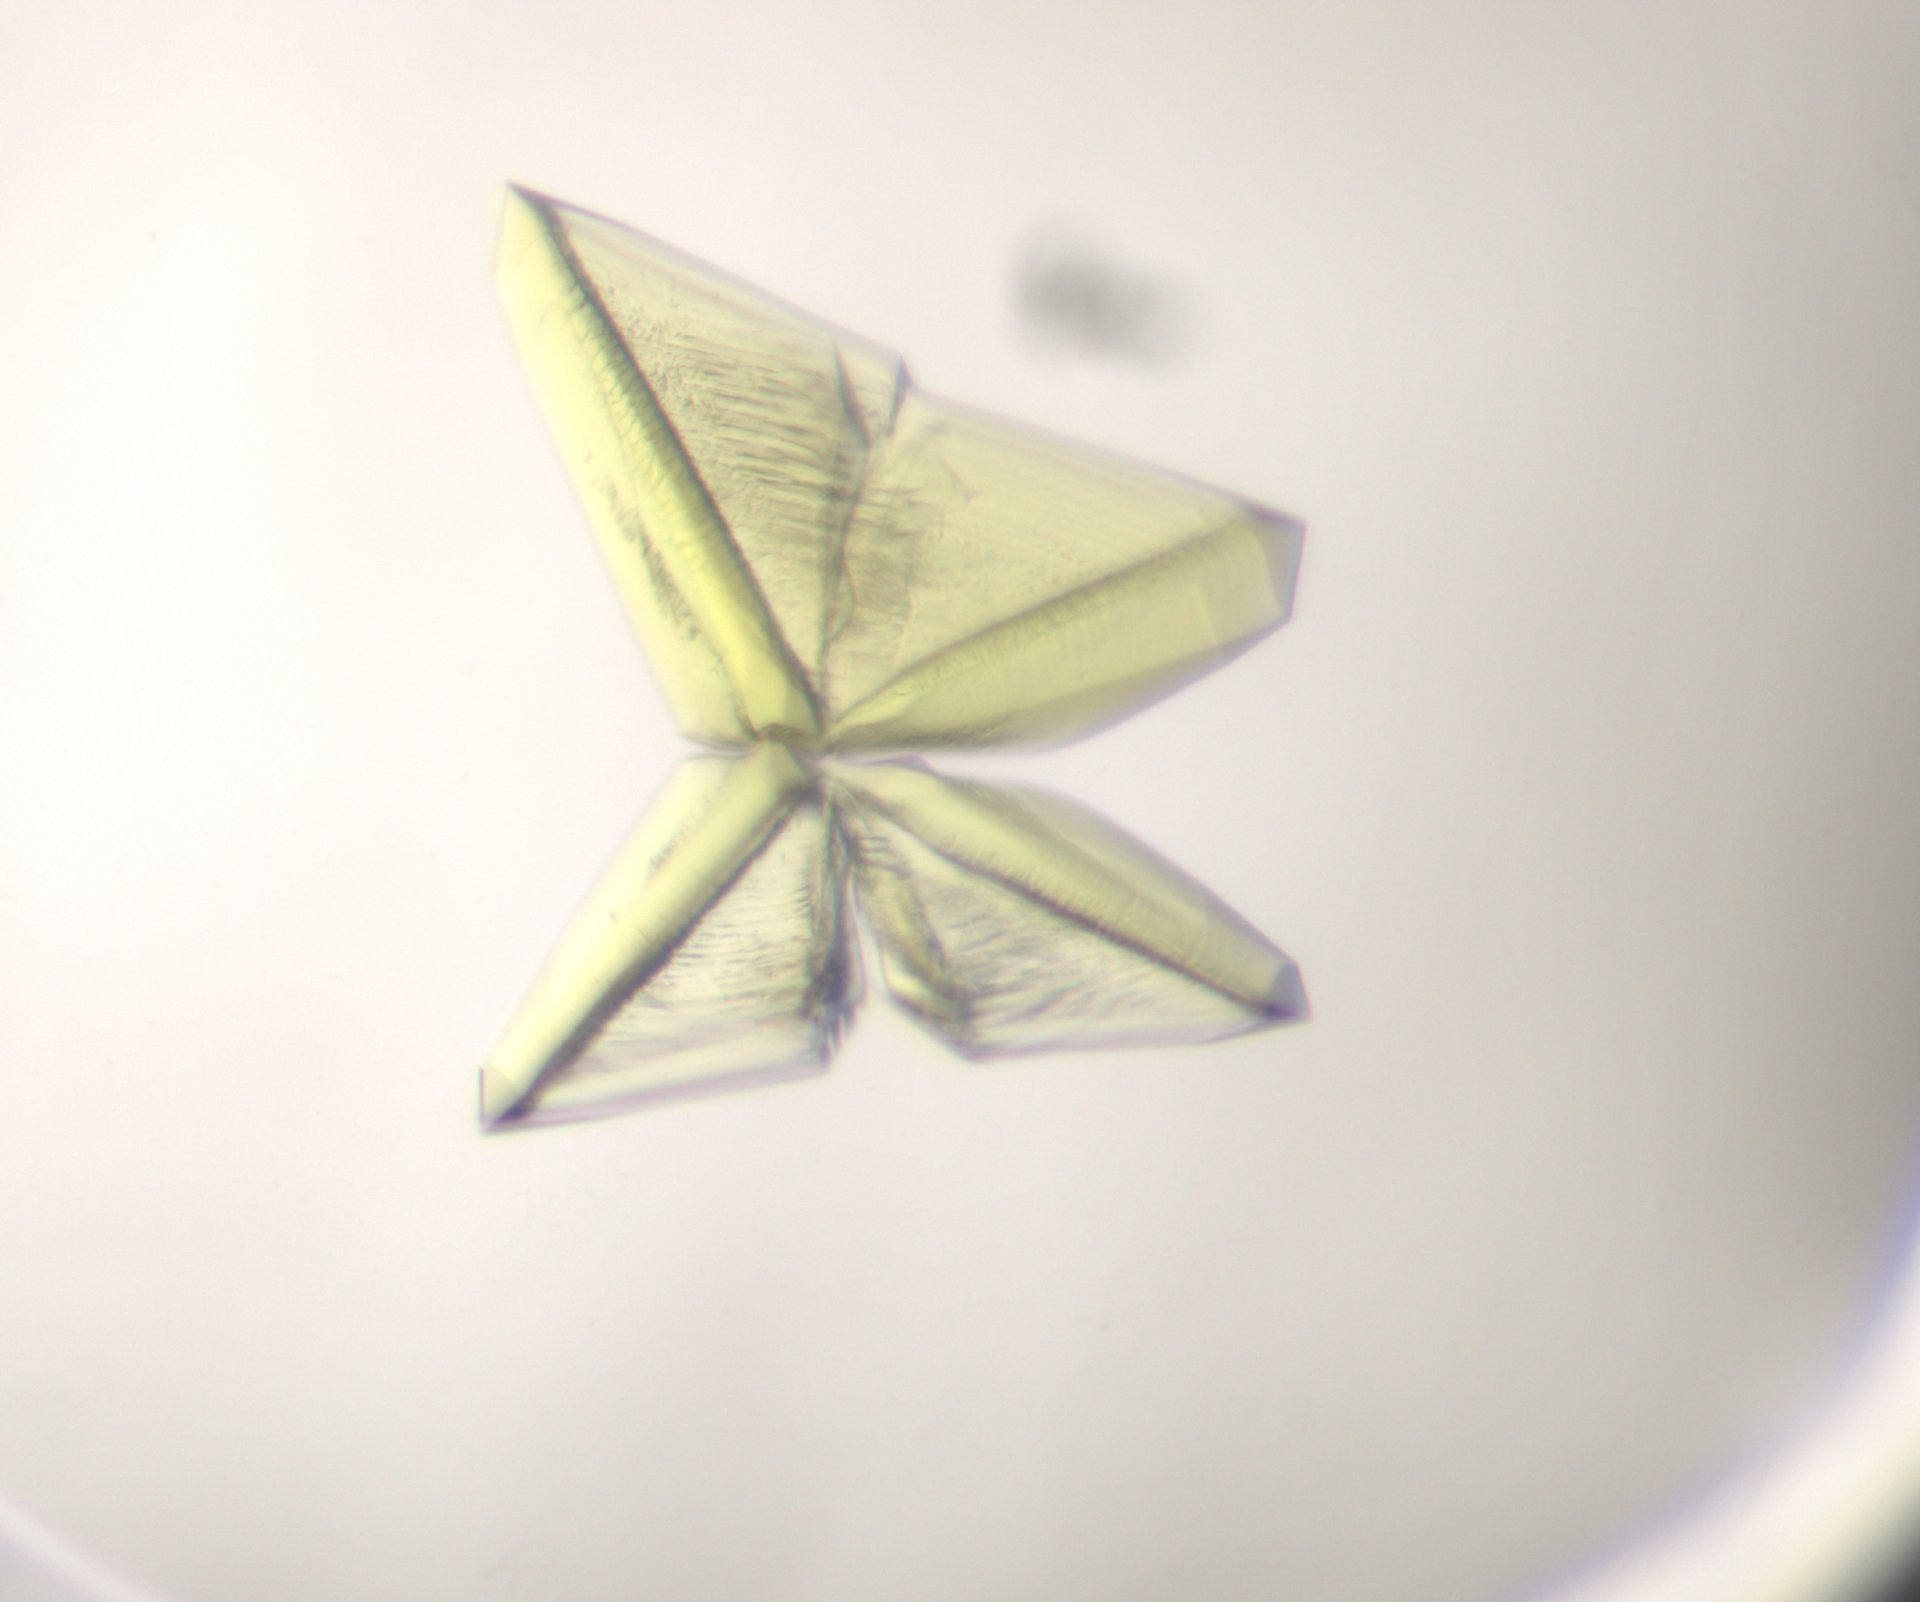 A protein crystal (© Max-Planck-Institut für Marine Mikrobiologie, Bremen / Olivier Lemaire)